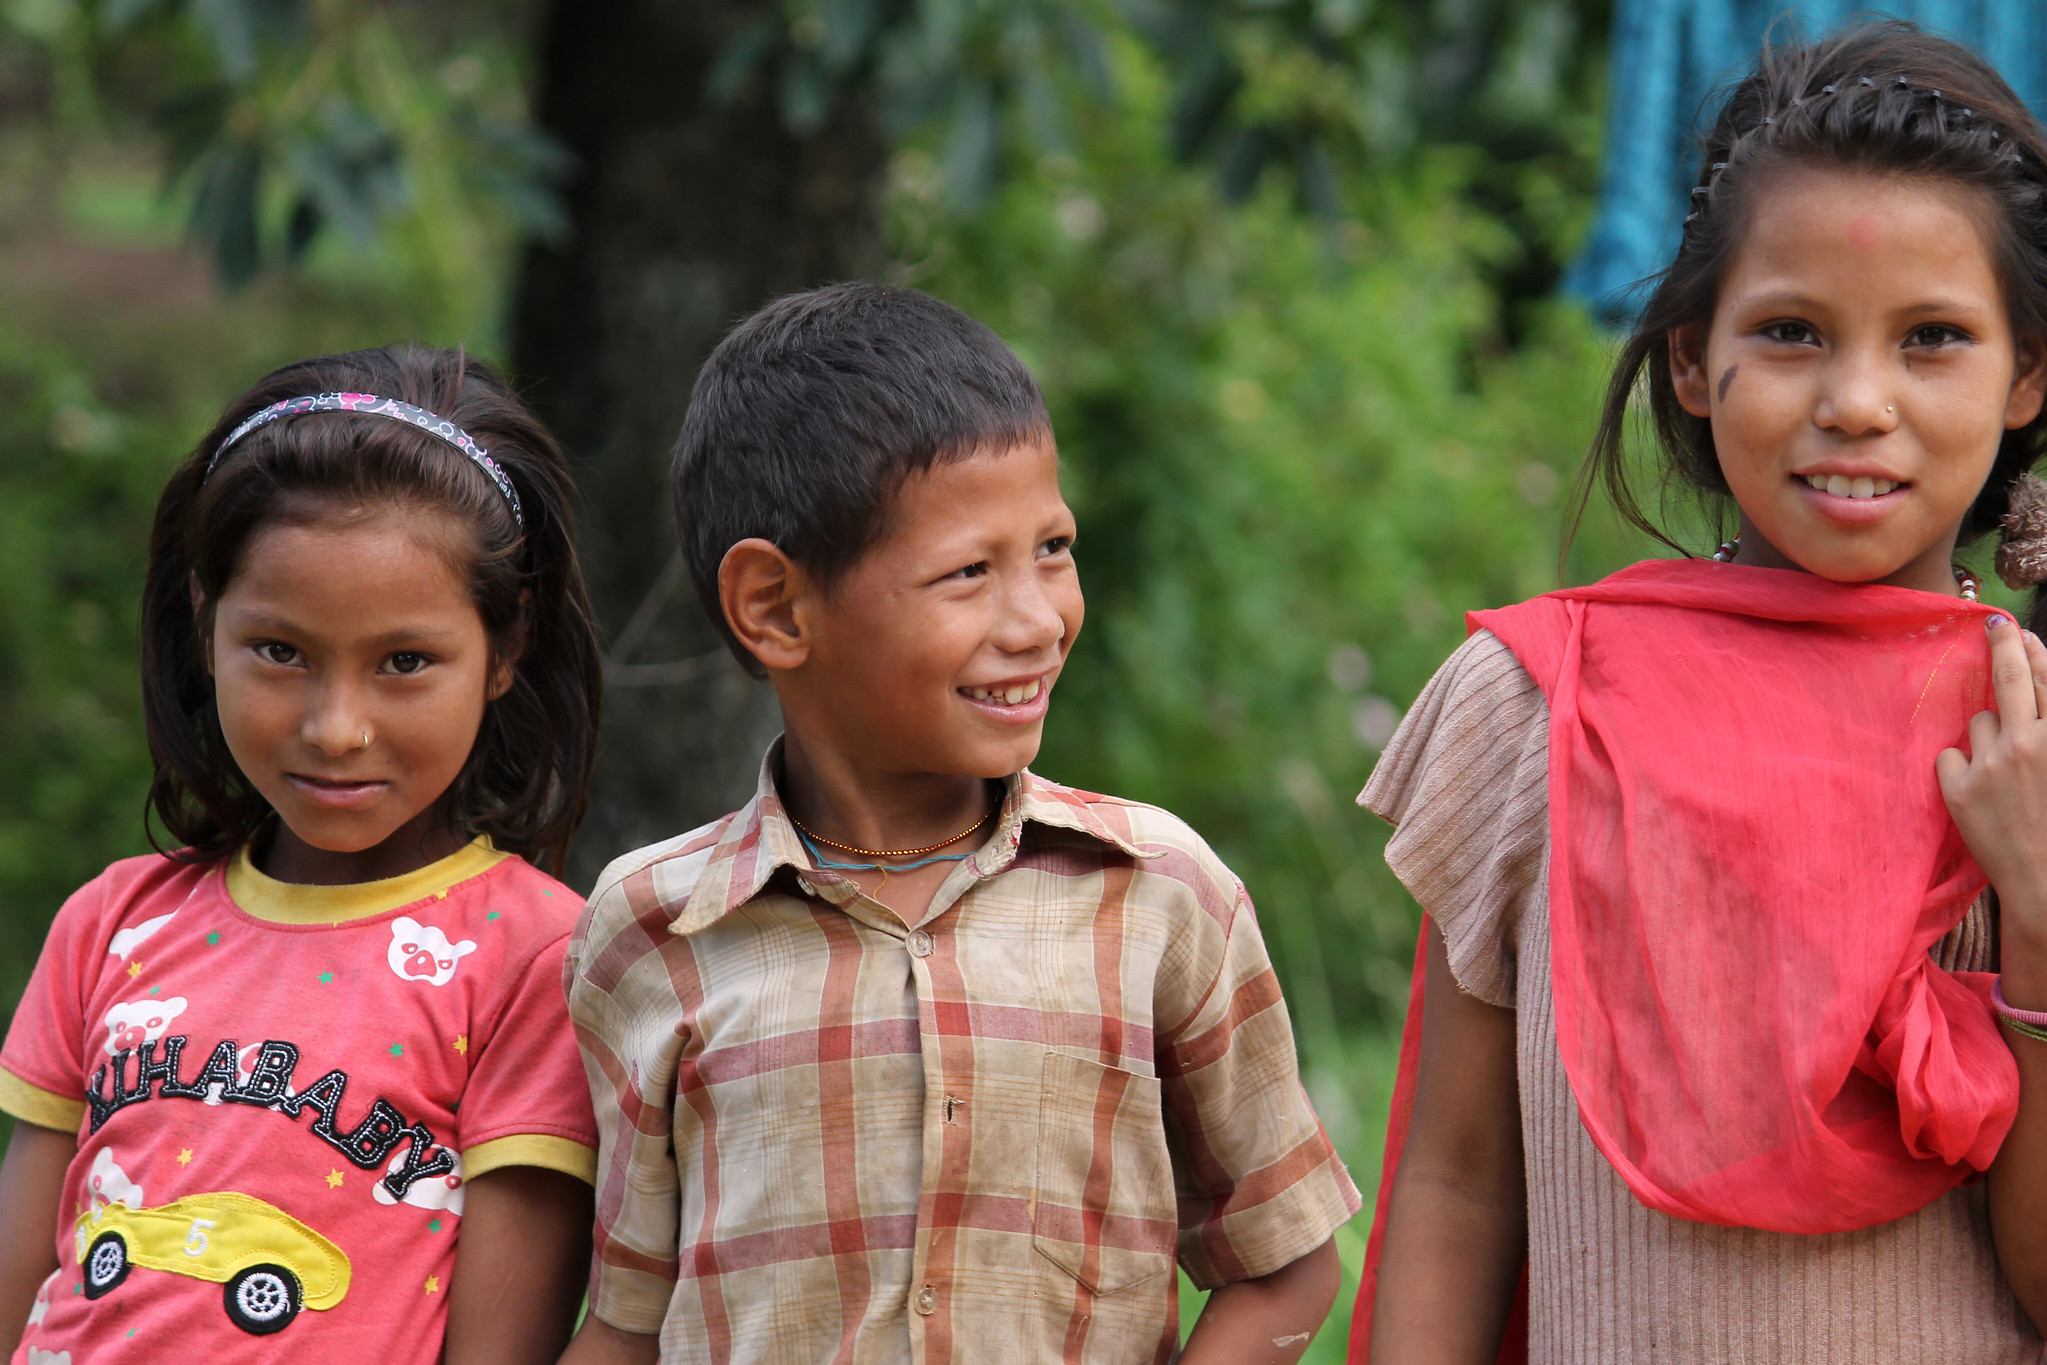 Children in Naubise, Dhading. Nepal.